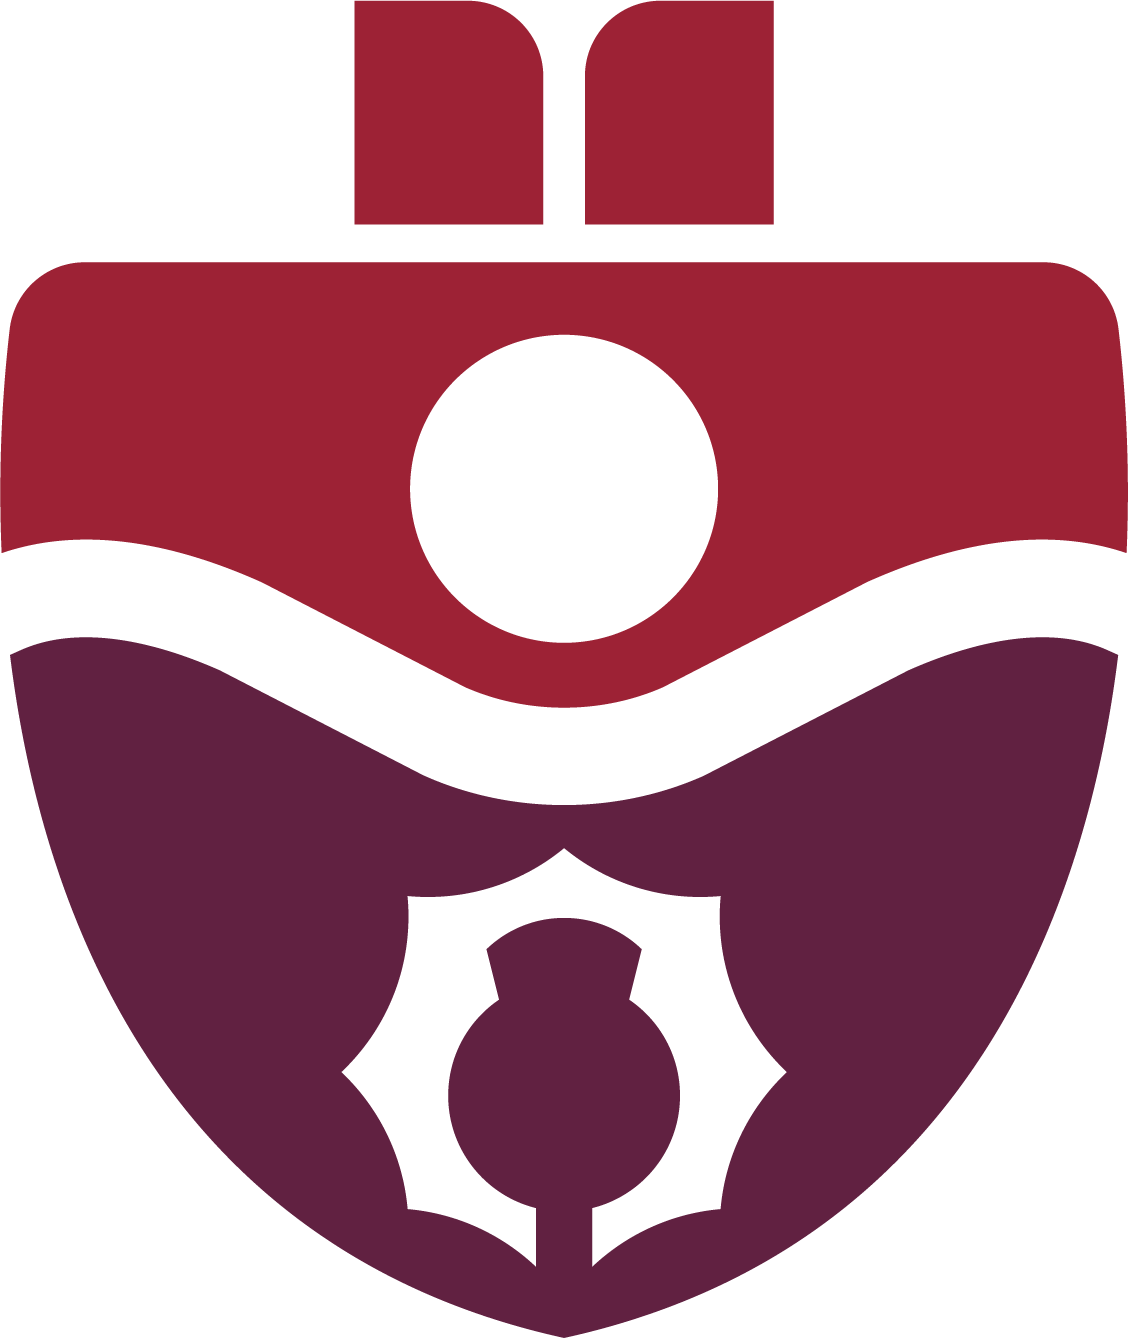 SMU shield logo